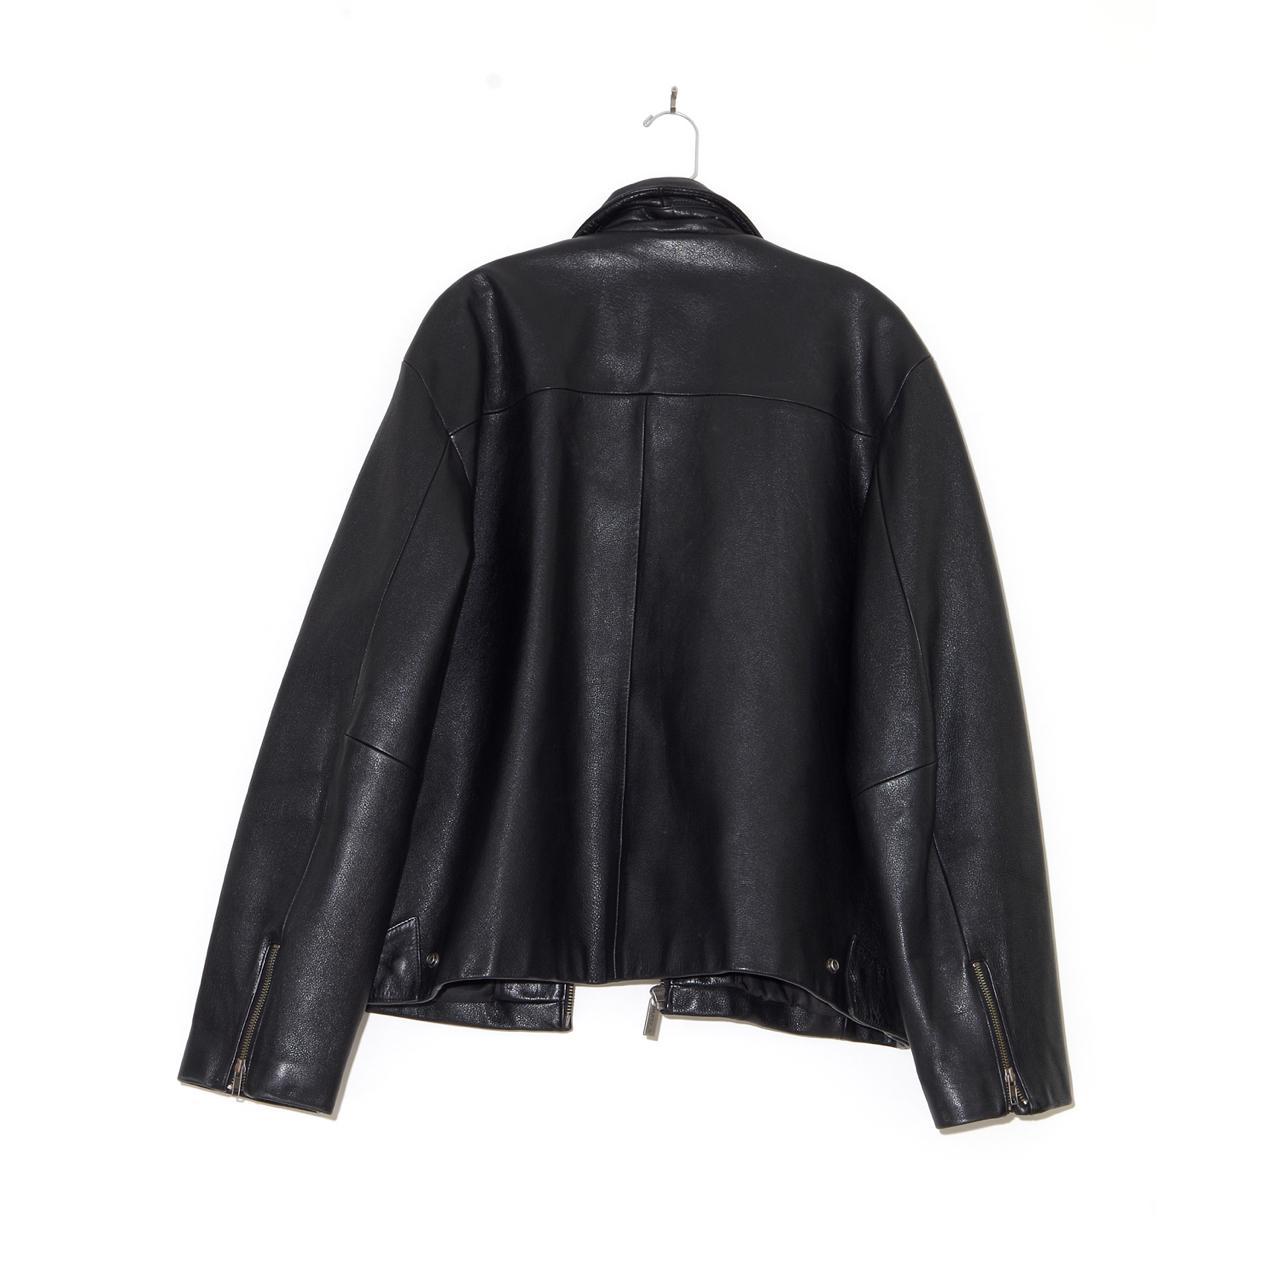 Wilson’s Leather Women's Black Jacket | Depop